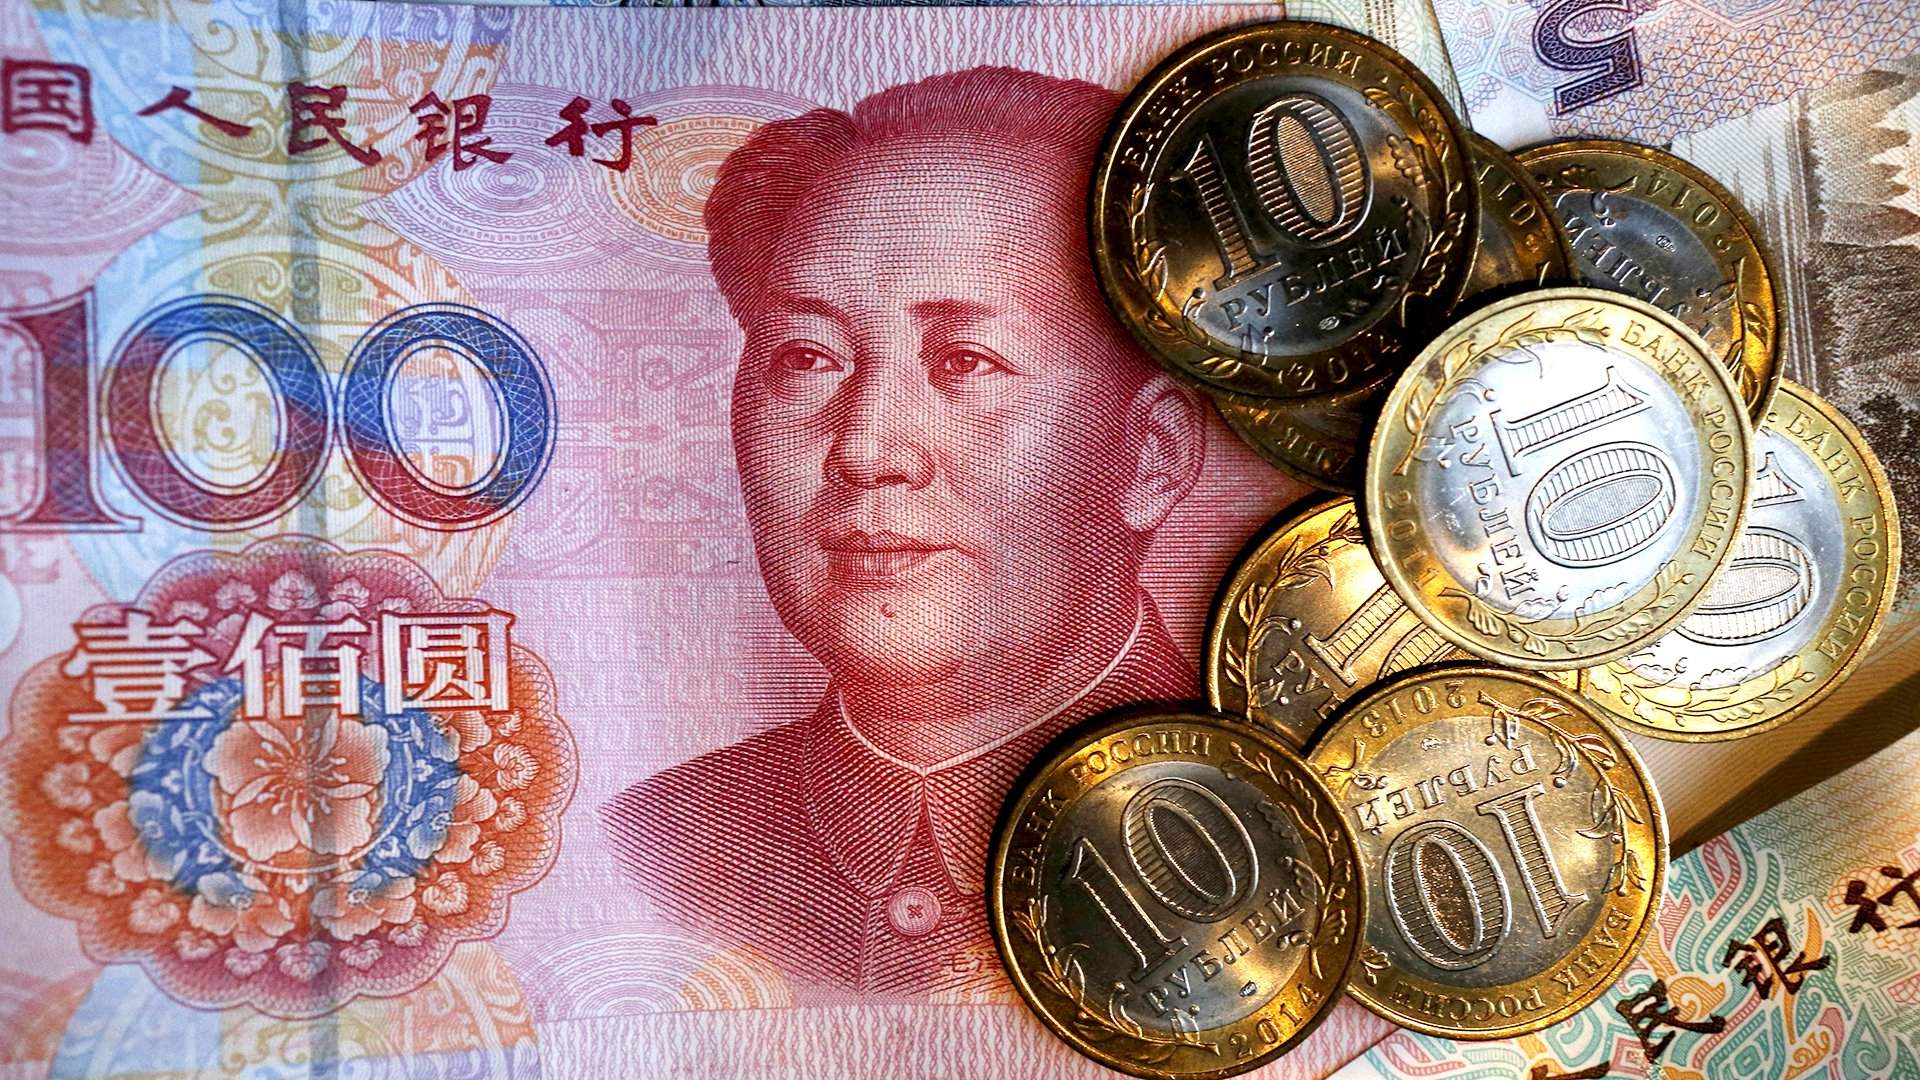 КНР рассматривает переход на рубли или юани в торговле энергоносителями с РФ